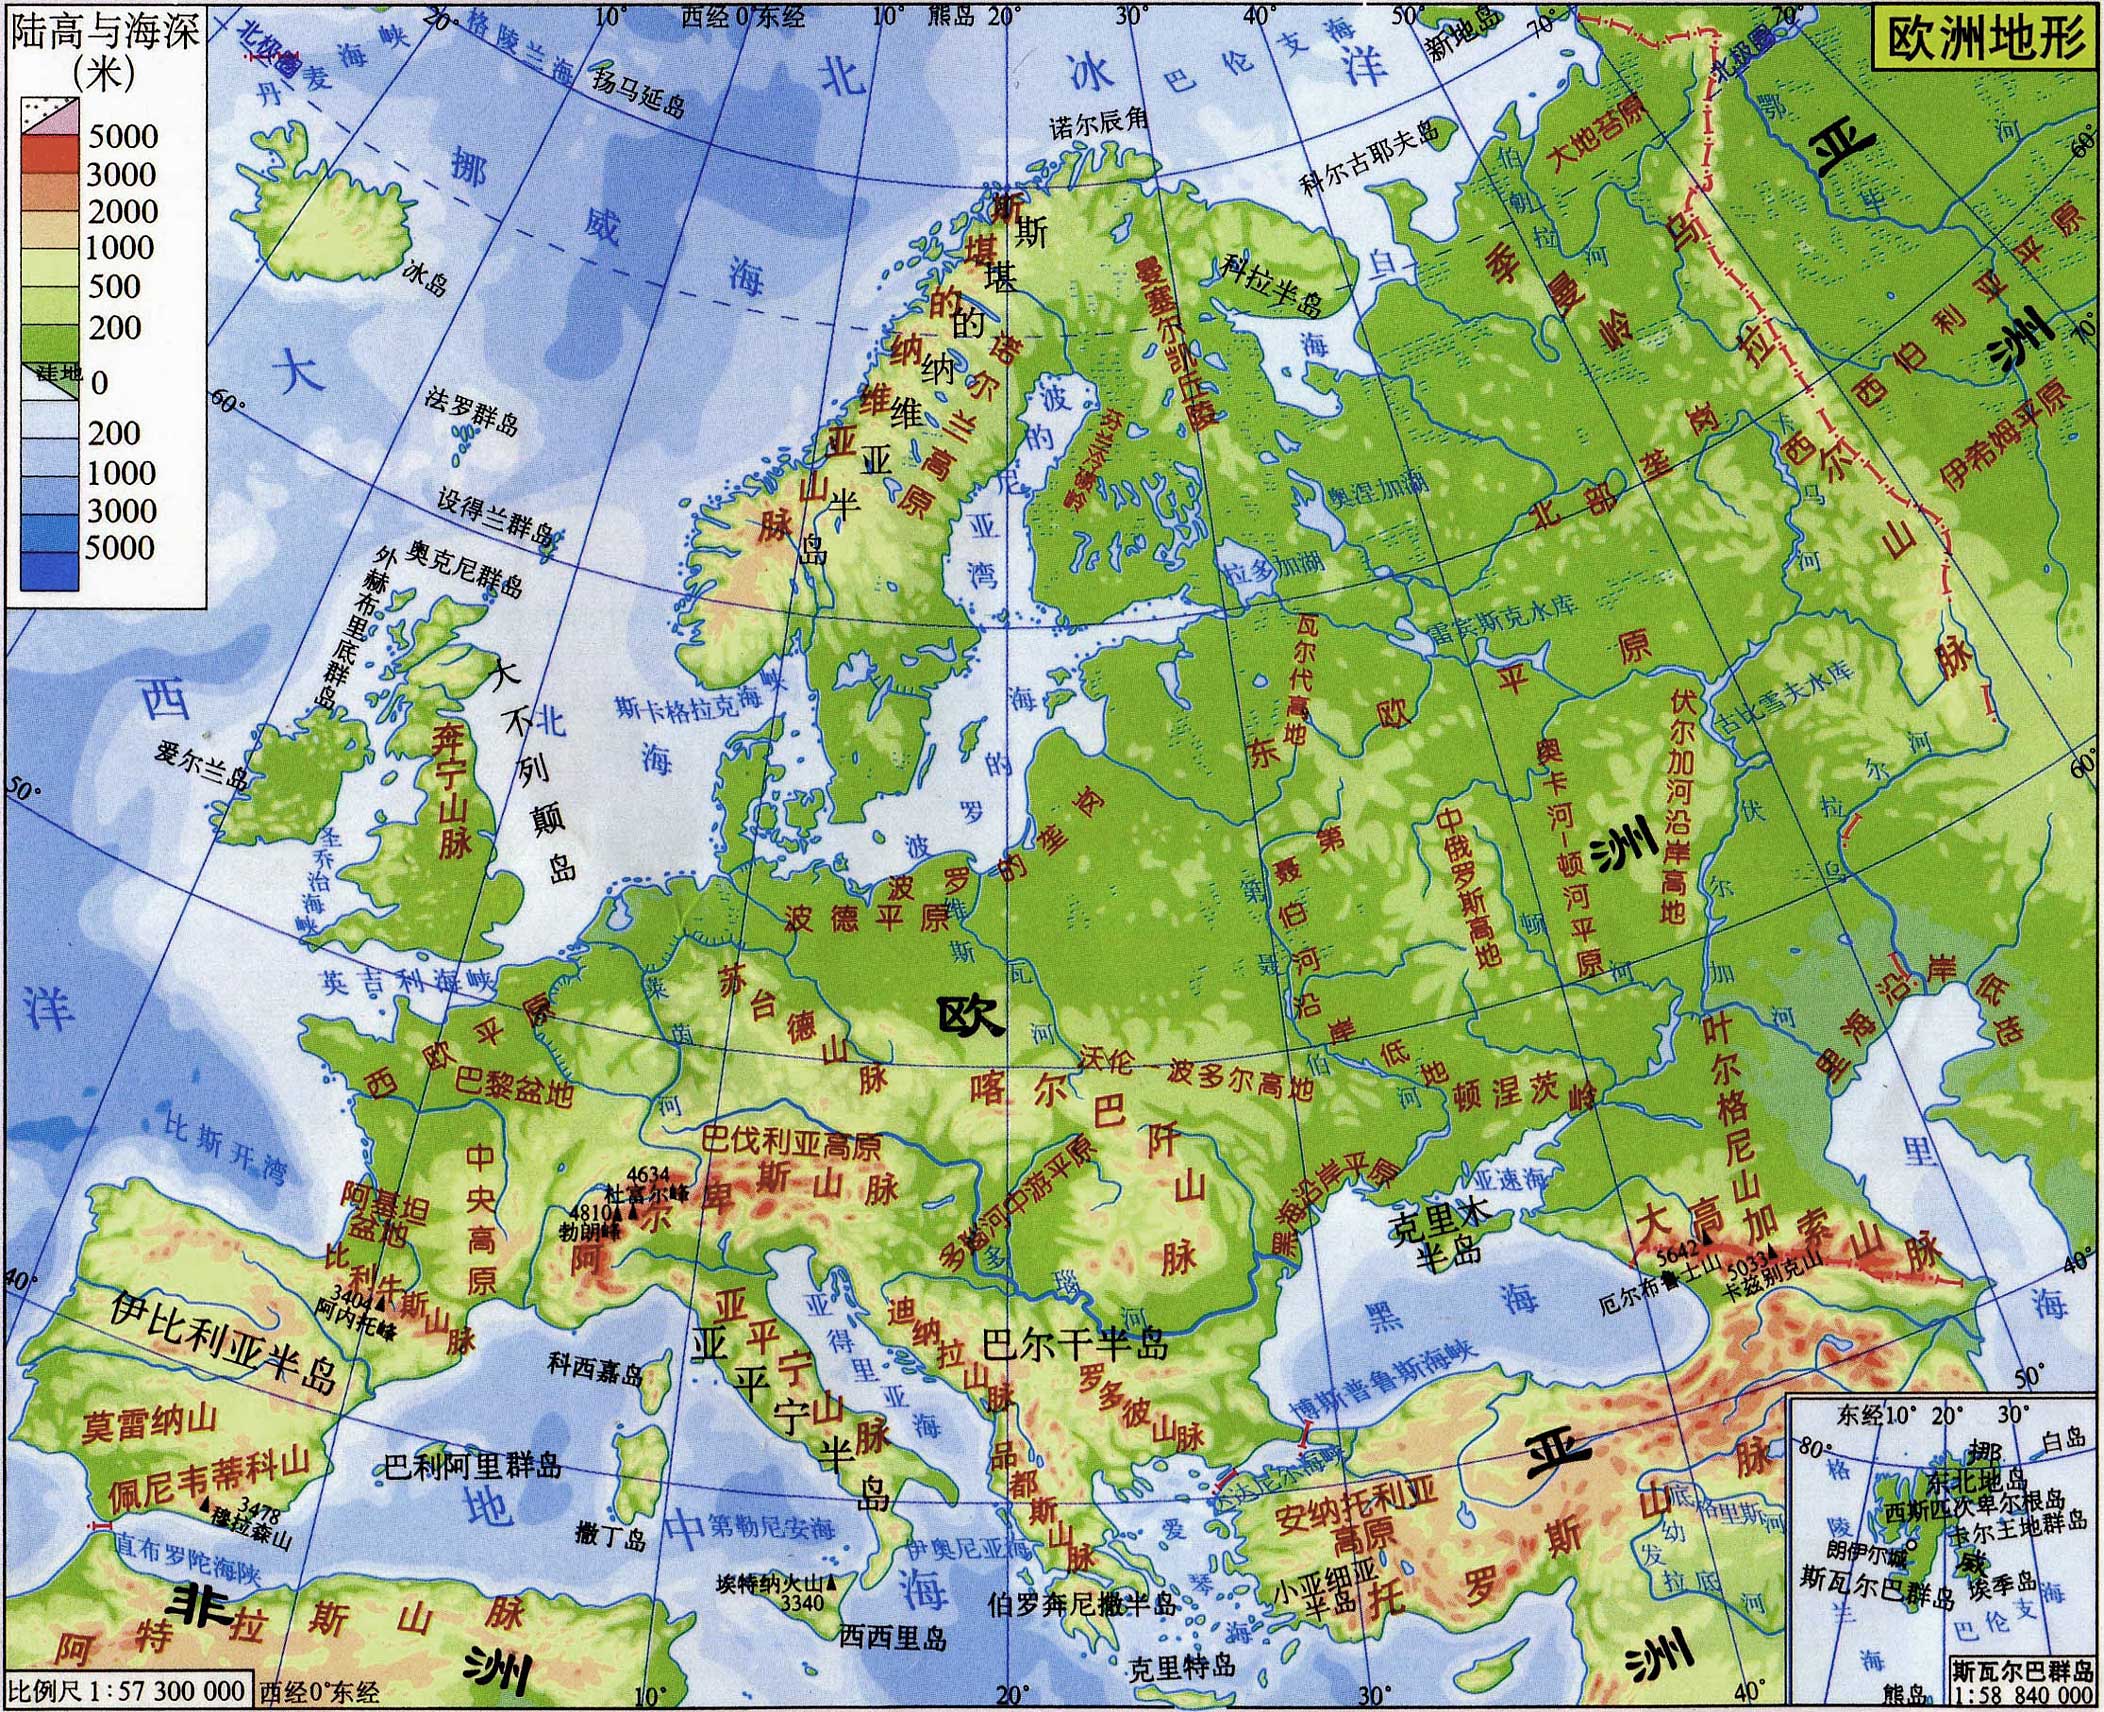 欧洲地图全图 高清晰图片